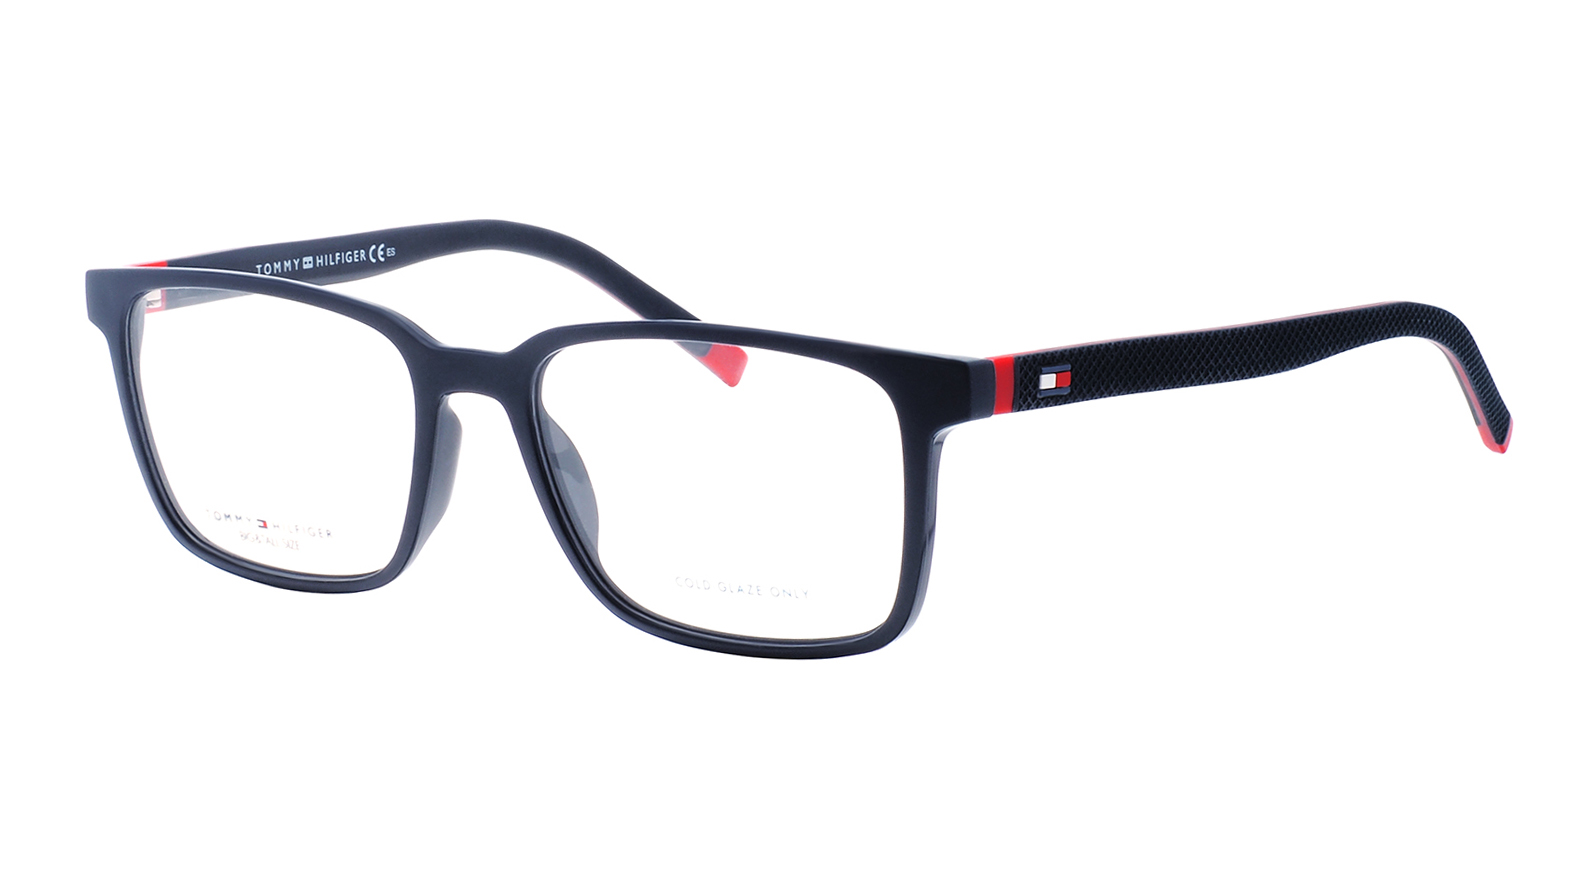 Tommy Hilfiger 1786 FLL очки корригирующие со стразами onegin бордо с темно синим 3 0